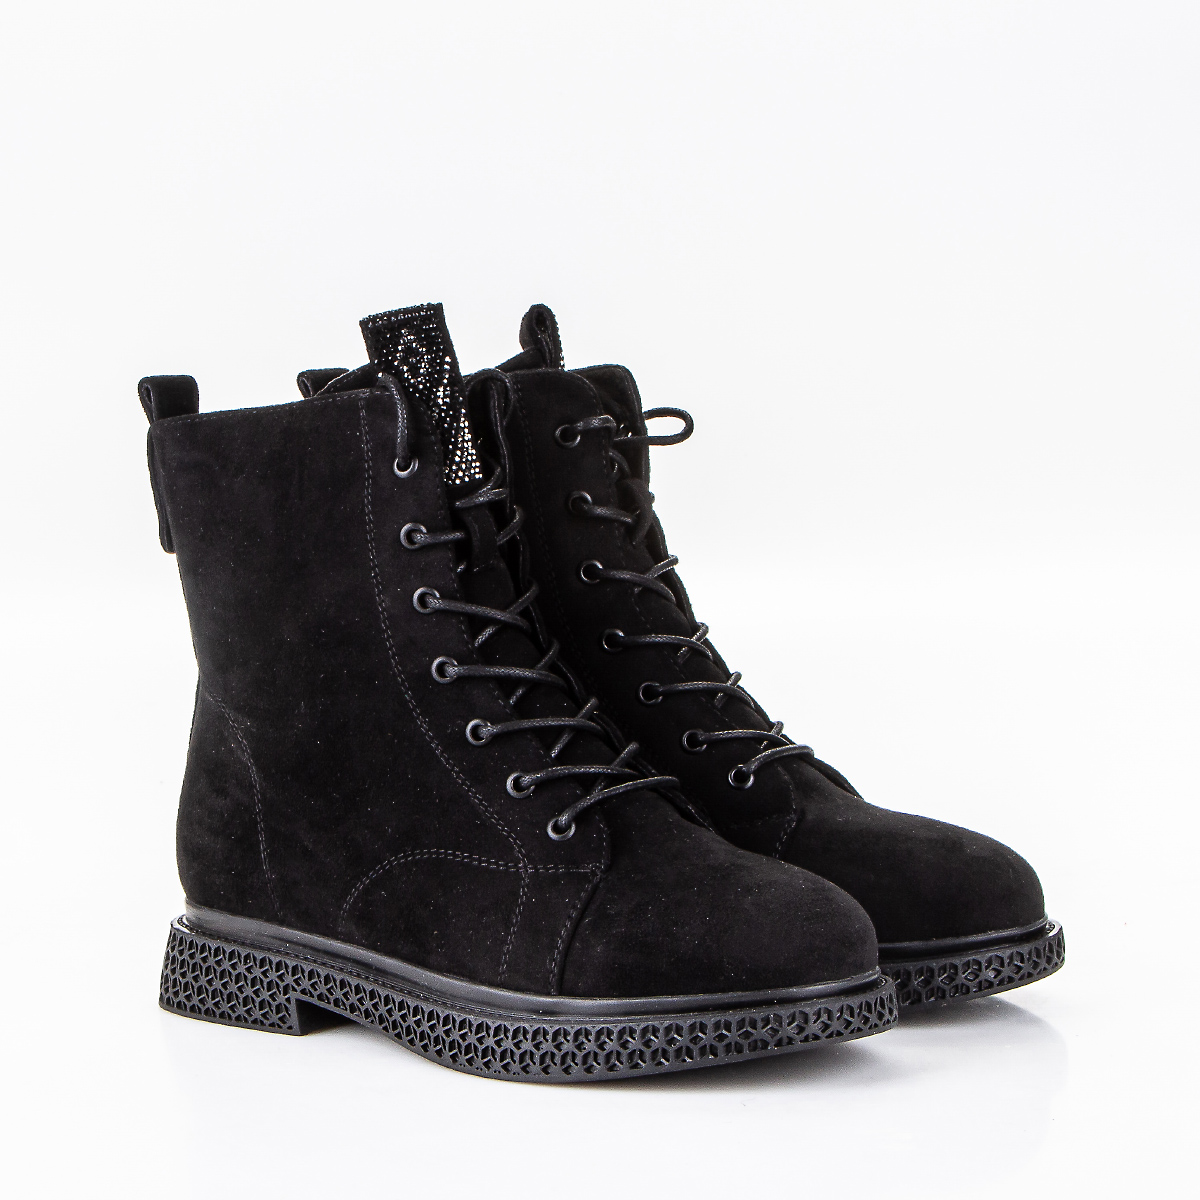 Фото Ботинки женские P505-1 black купить на lauf.shoes